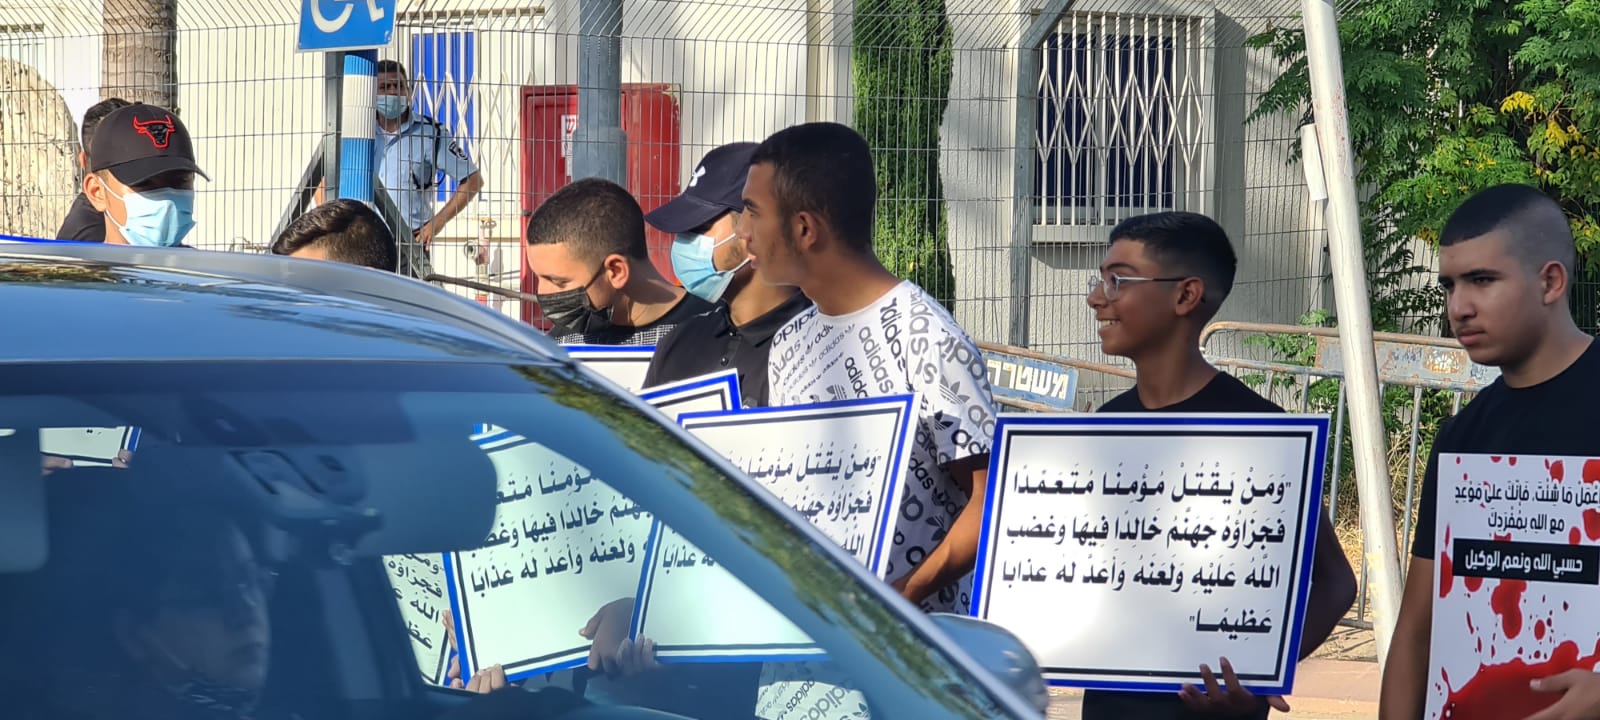 مظاهرة امام الشرطة في اللد بعد جنازة الطالب أنس الوحواح 